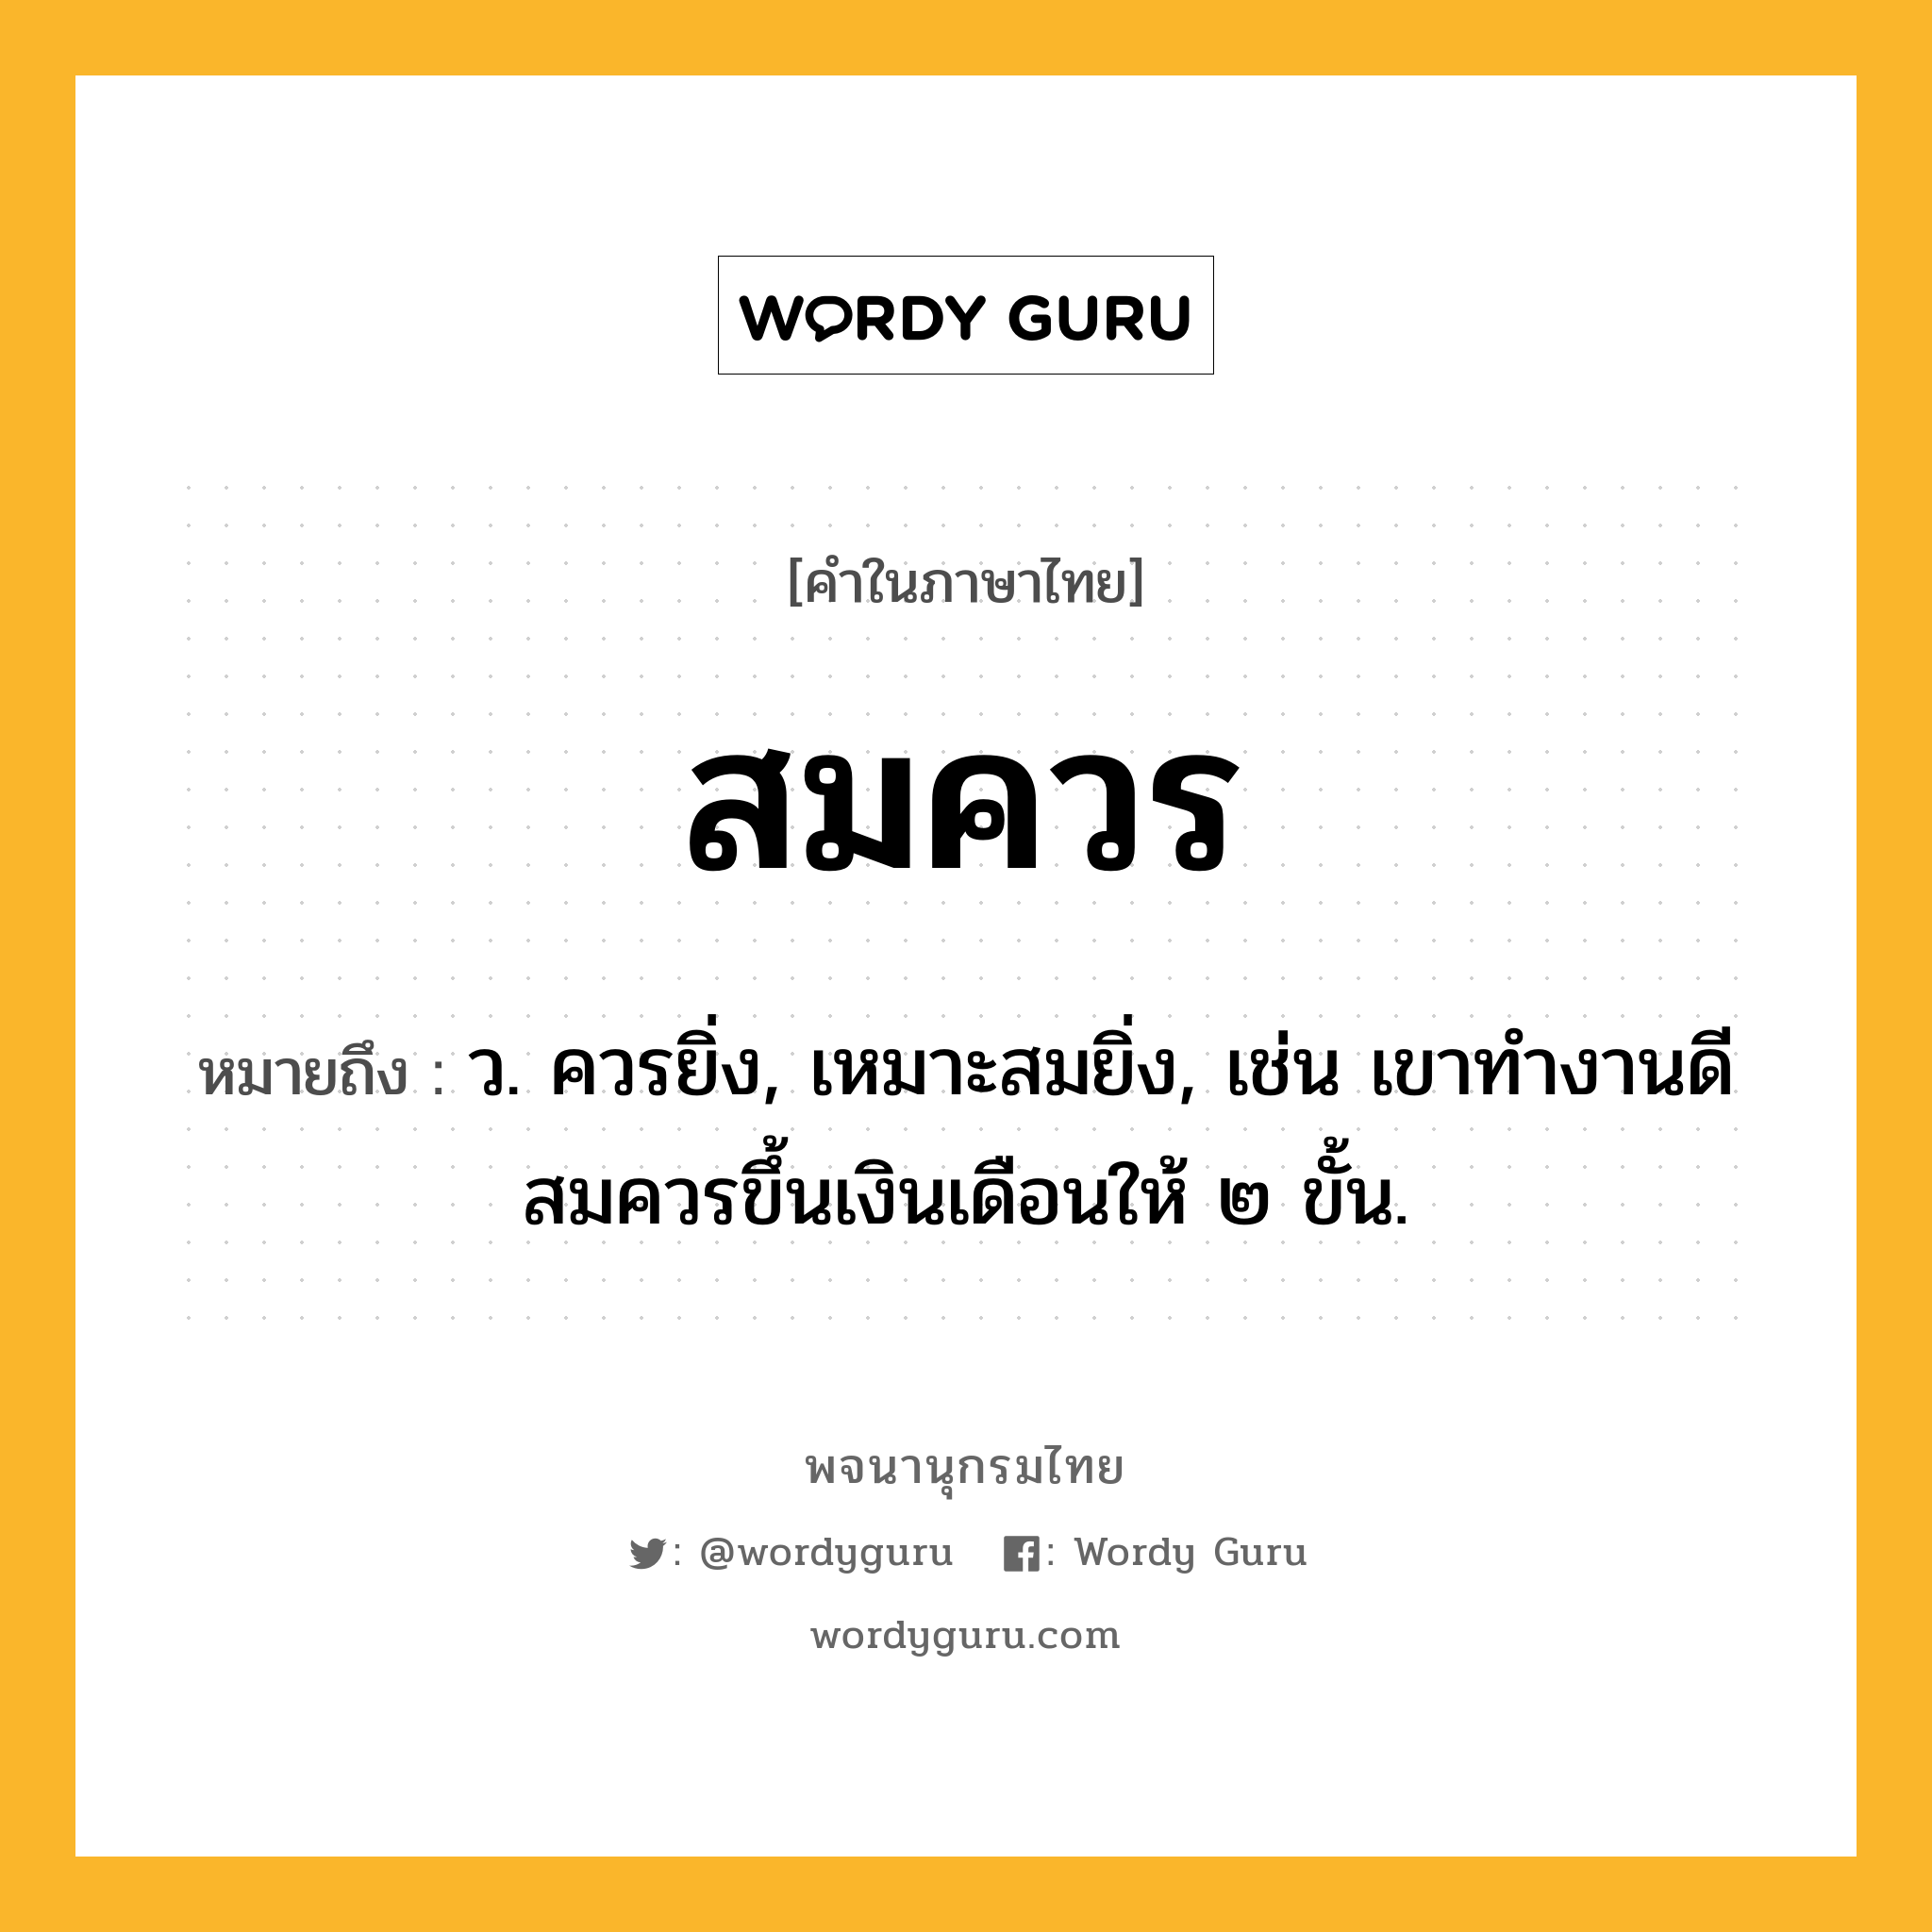 สมควร ความหมาย หมายถึงอะไร?, คำในภาษาไทย สมควร หมายถึง ว. ควรยิ่ง, เหมาะสมยิ่ง, เช่น เขาทำงานดีสมควรขึ้นเงินเดือนให้ ๒ ขั้น.